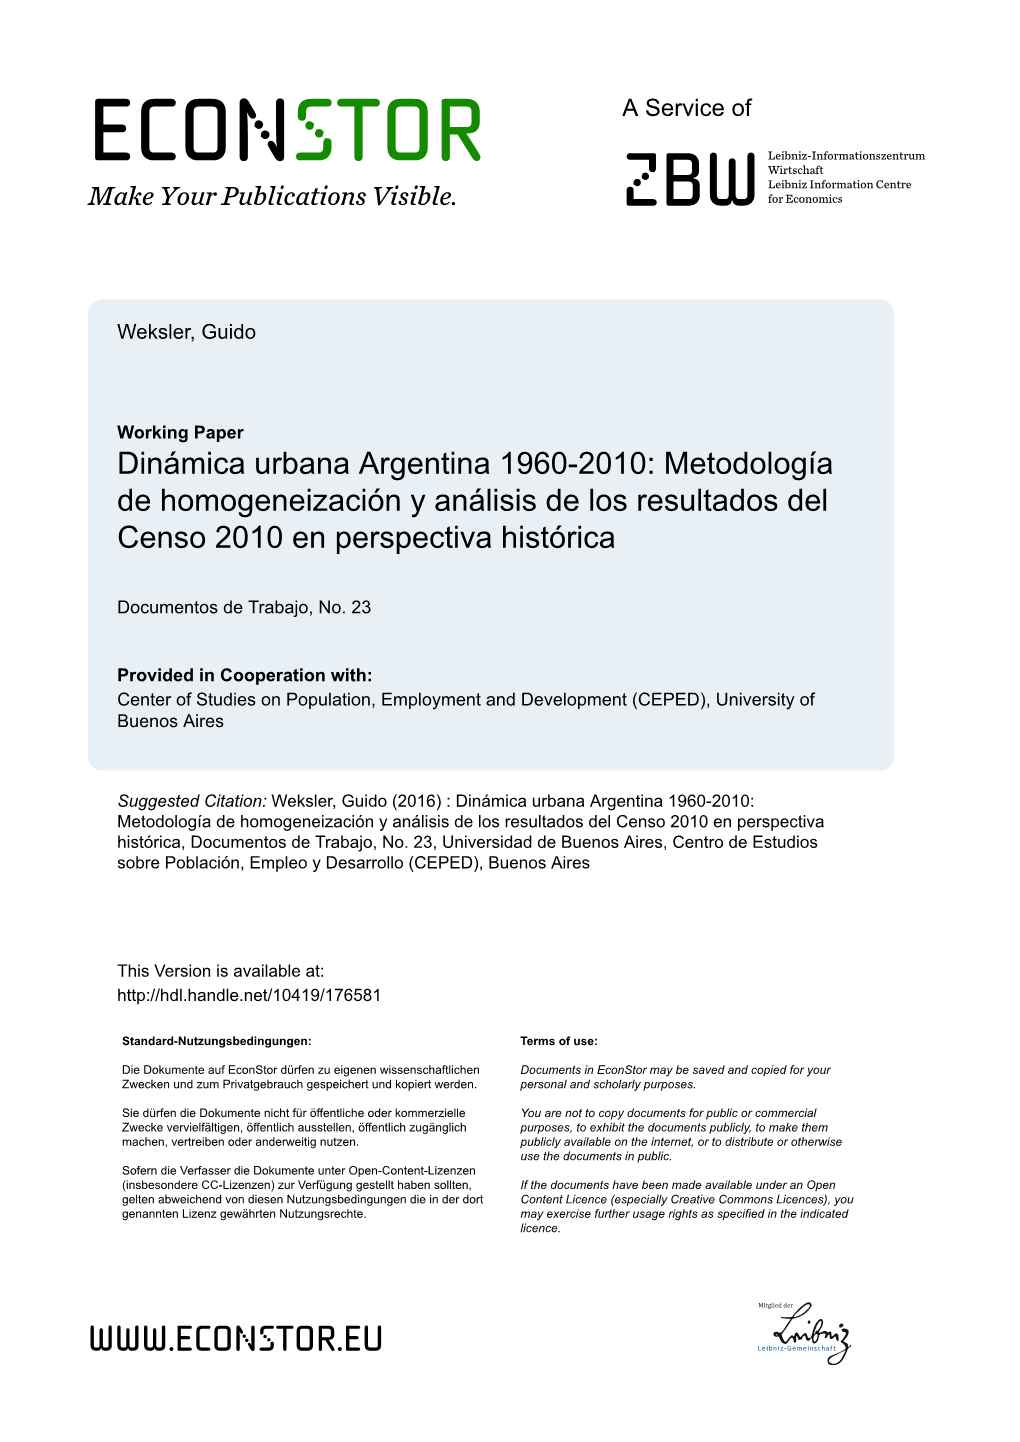 Dinámica Urbana Argentina 1960-2010: Metodología De Homogeneización Y Análisis De Los Resultados Del Censo 2010 En Perspectiva Histórica